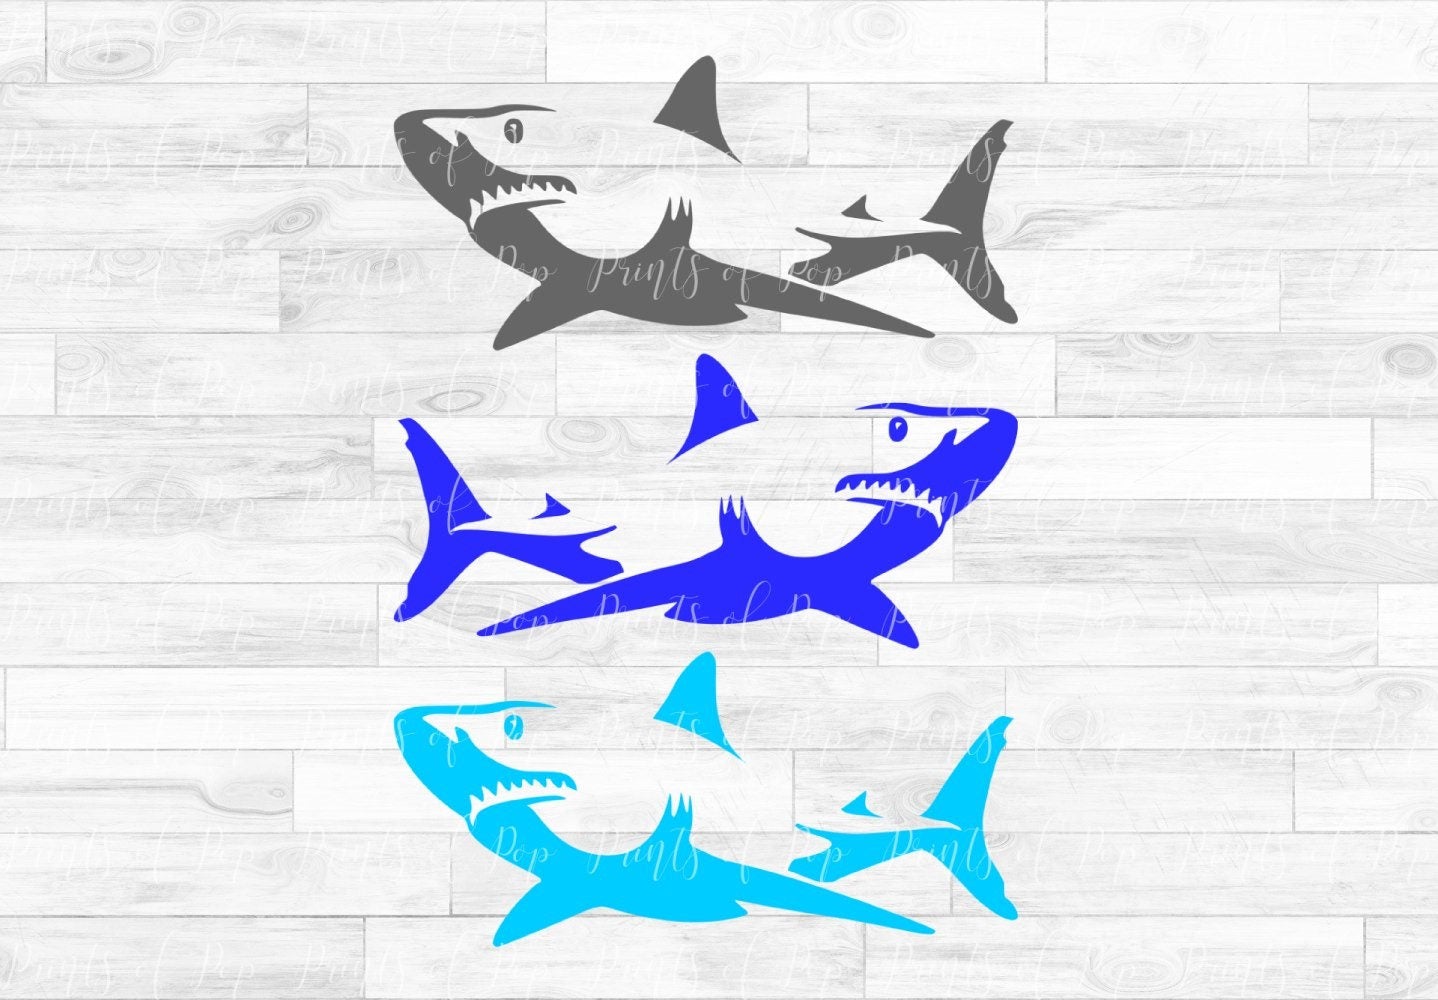 Free Free 231 Shark Svg SVG PNG EPS DXF File